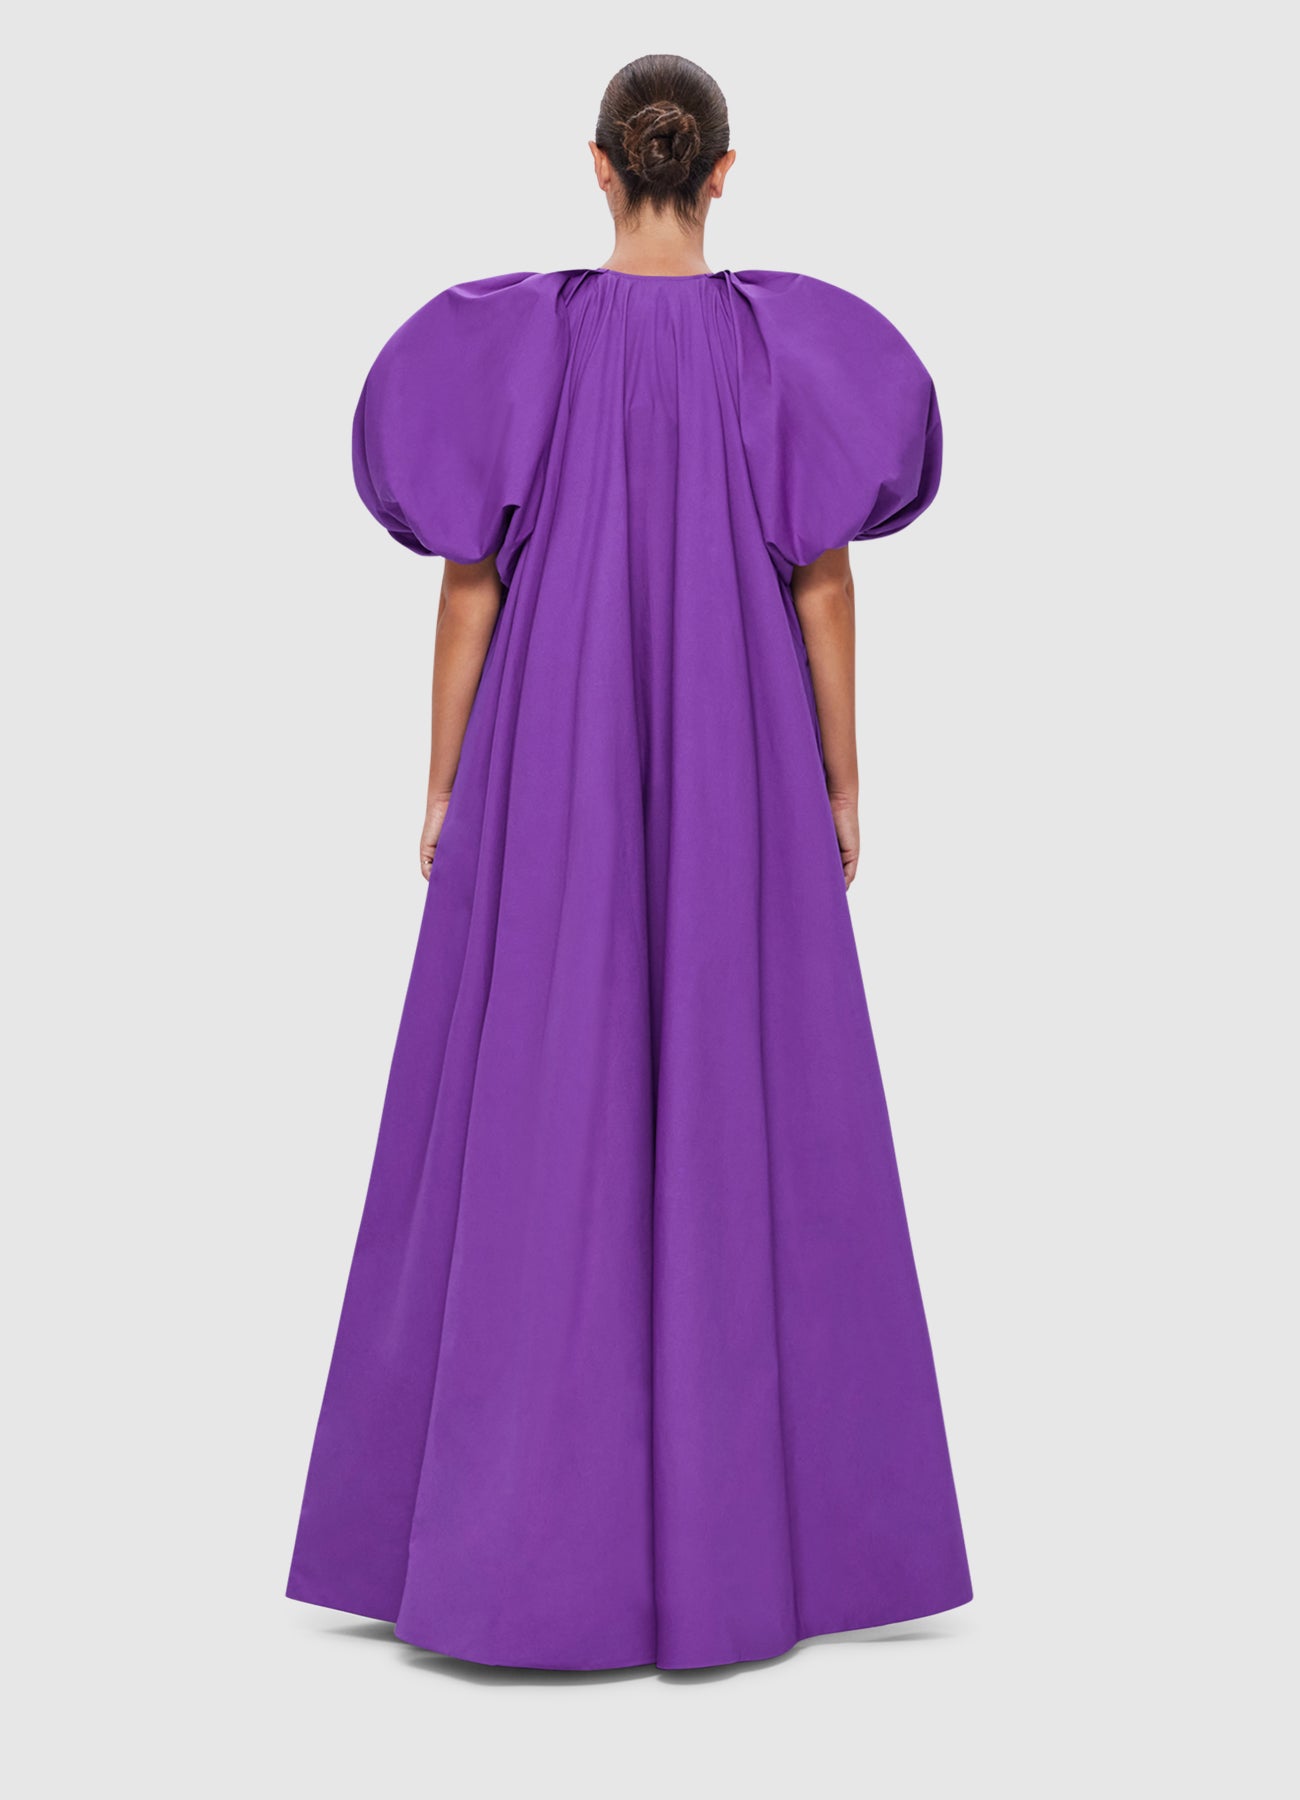 Noelle Bishop Sleeve Dress - Eminence | LEO LIN® Official Website